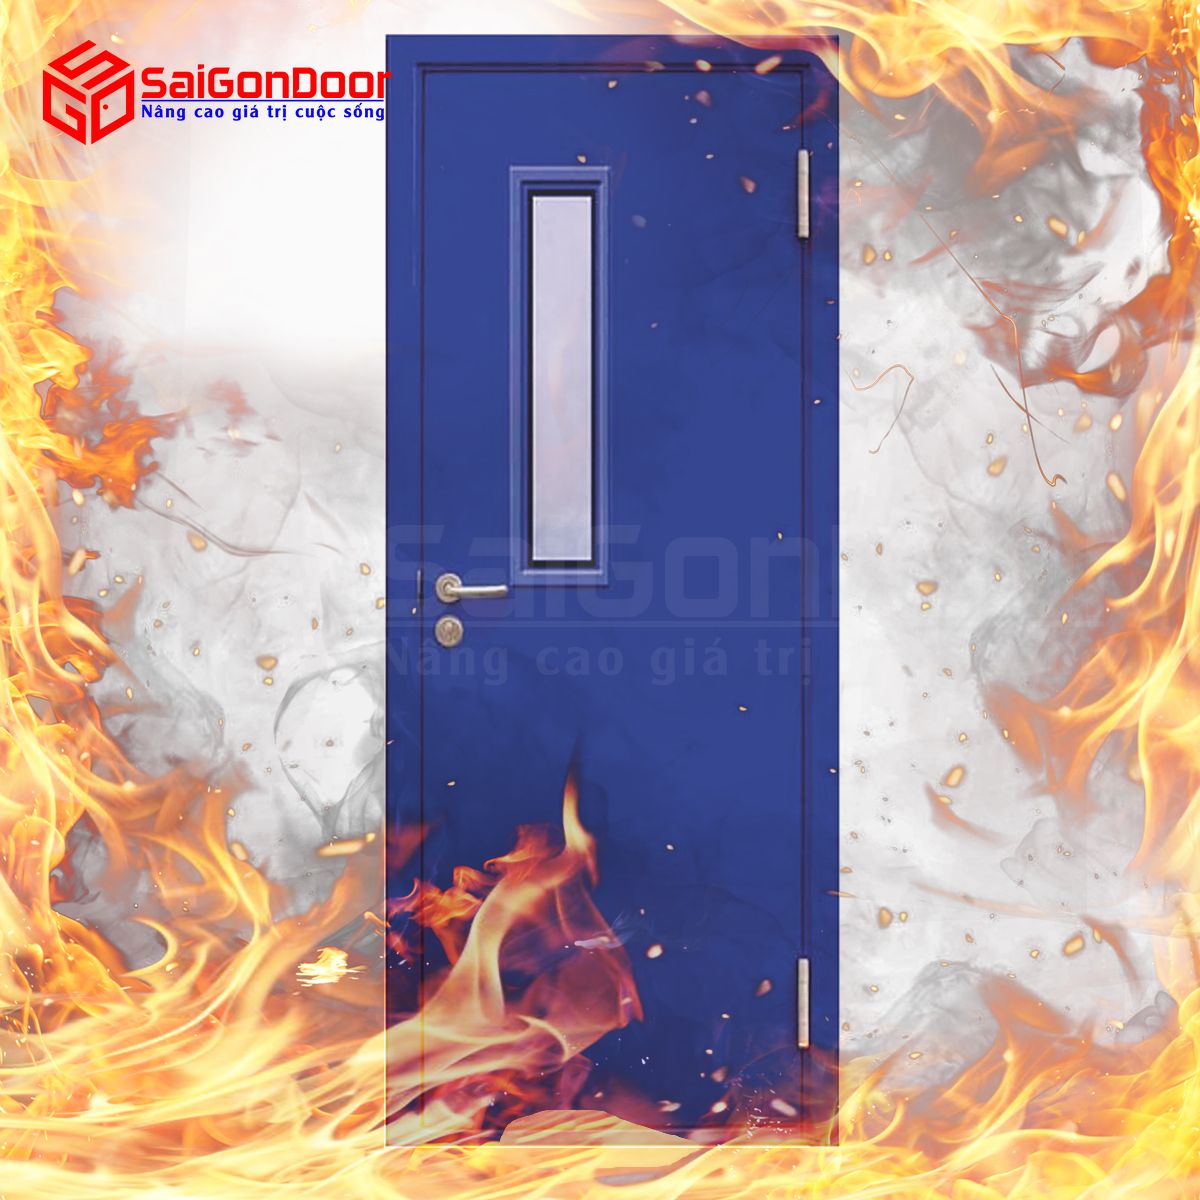 Lời khuyên lựa chọn cửa chống cháy